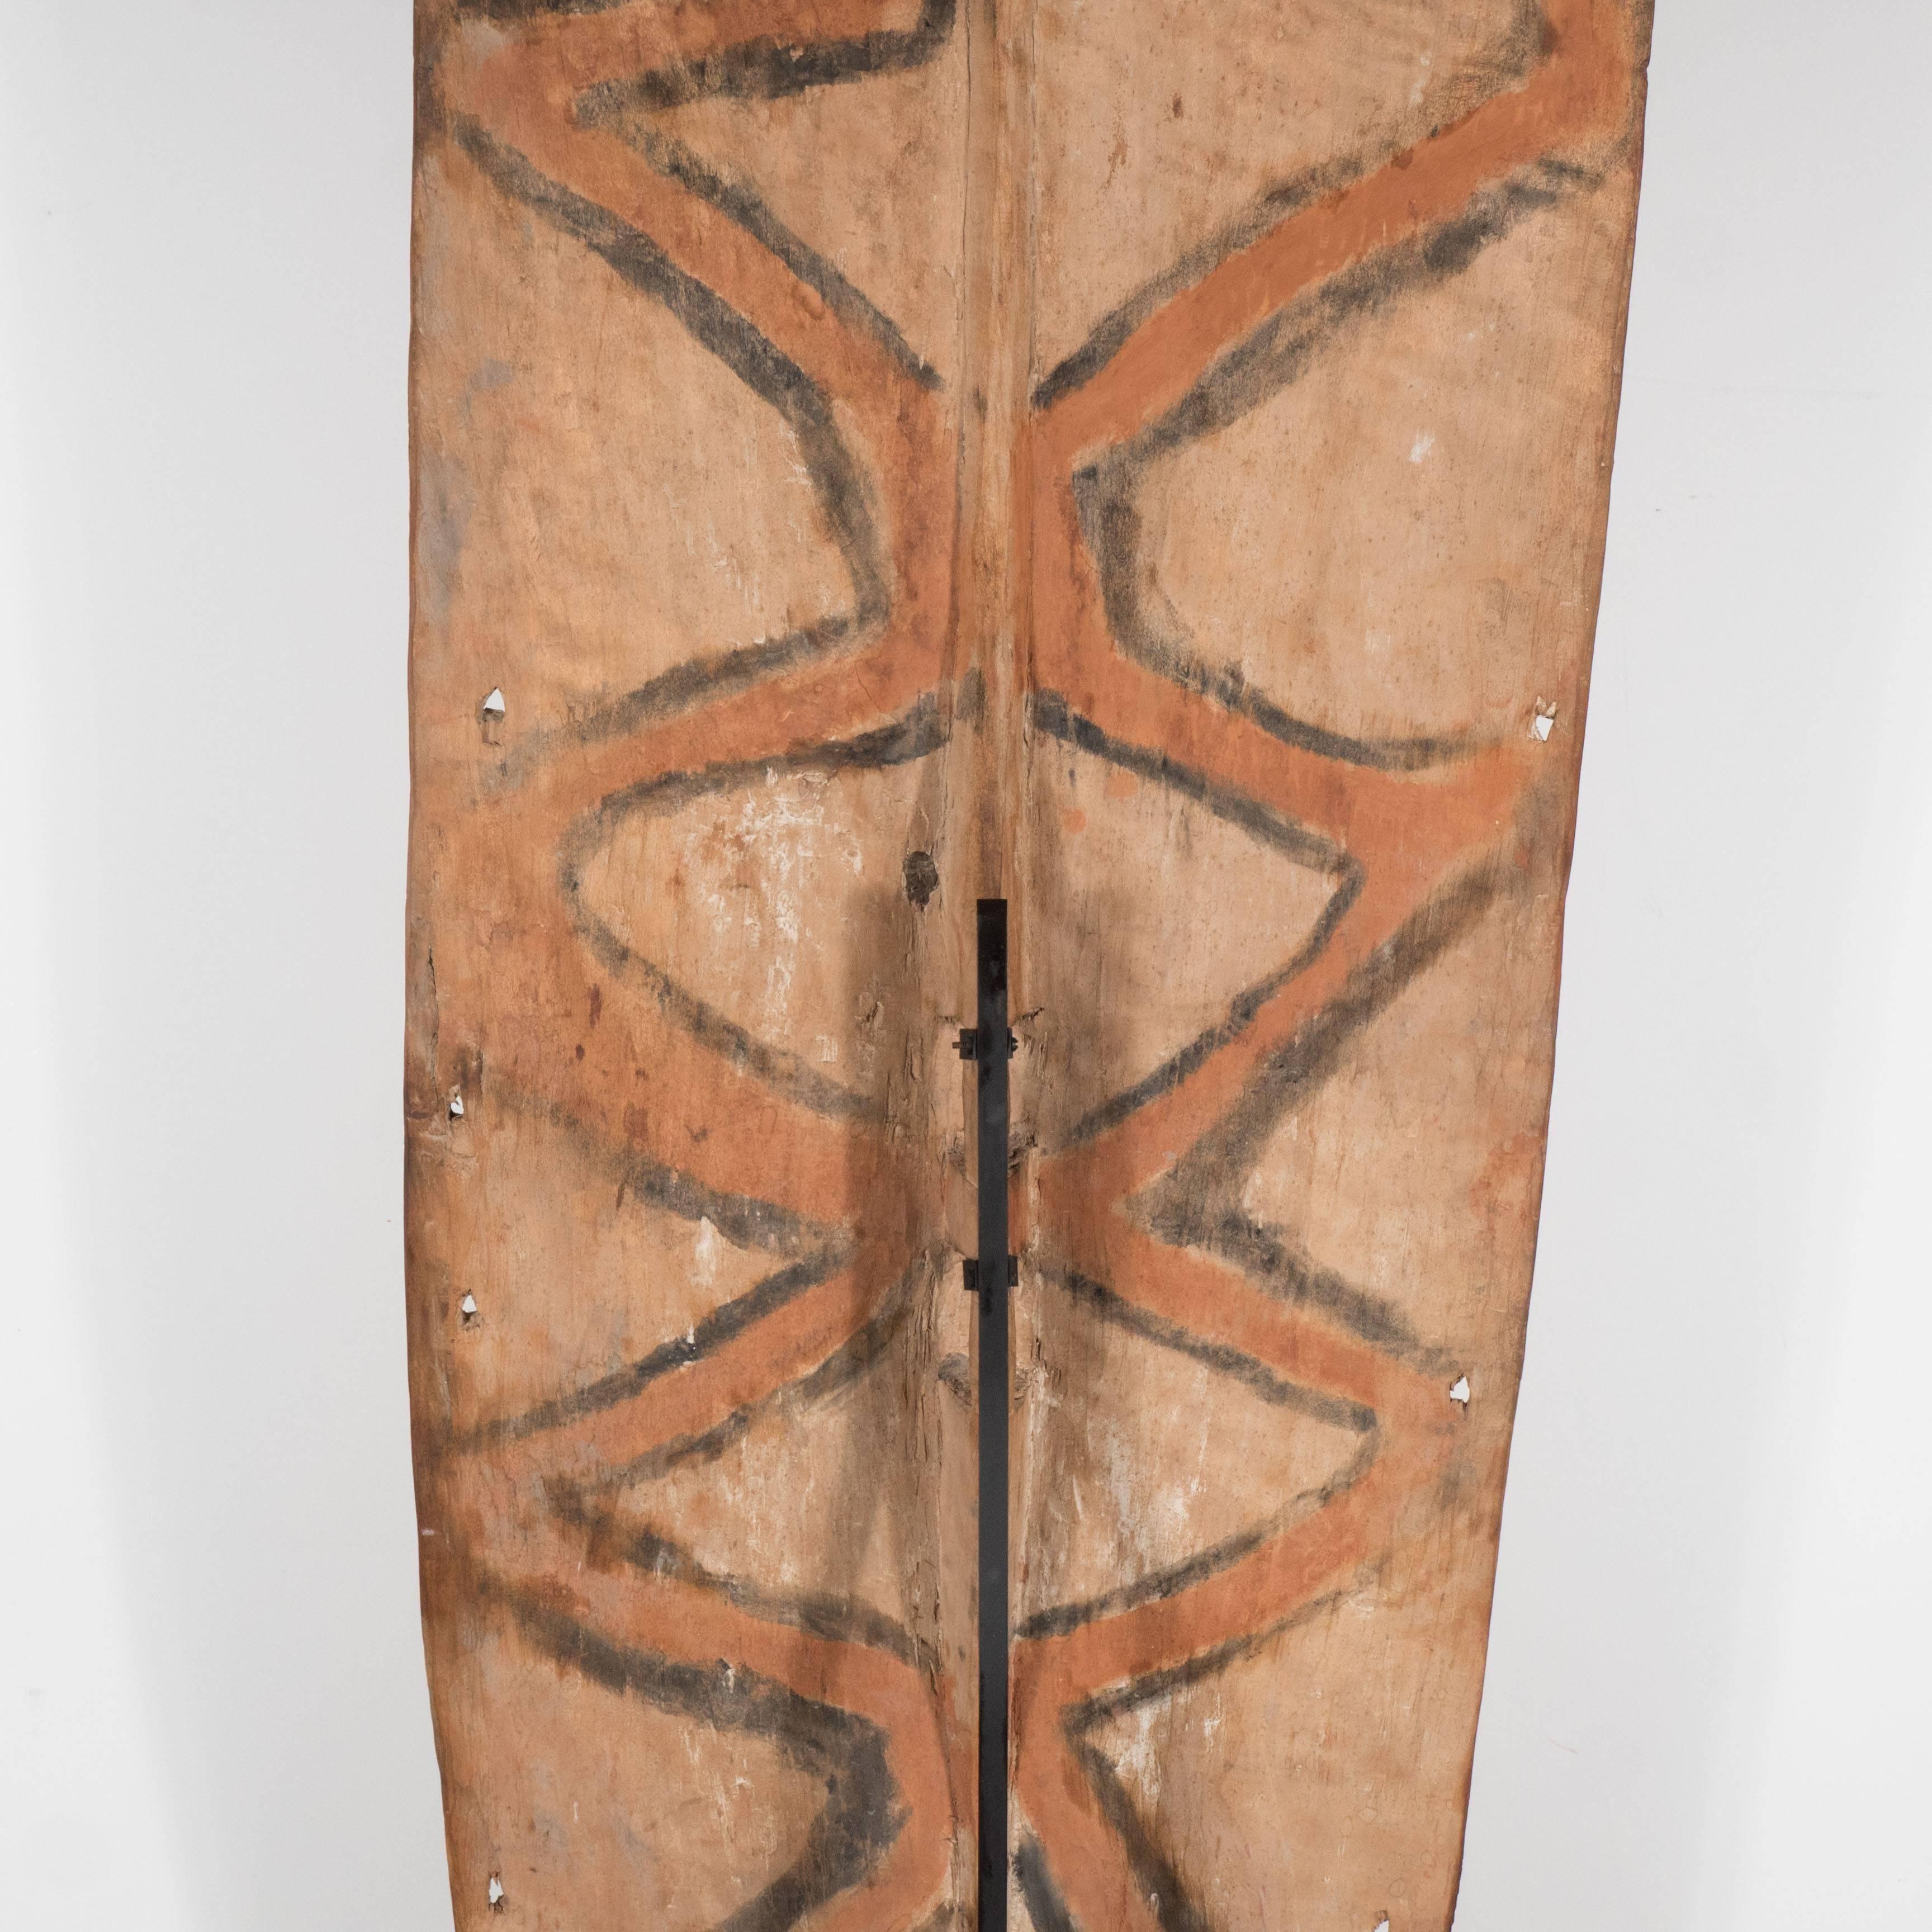 Dieses markante Schild wurde gegen Ende des 19. Jahrhunderts in Papua-Neuguinea hergestellt. Die rechteckige Form aus unbehandeltem, nubukfarbenem Hartholz ist mit weißen, geschwungenen und geometrischen Mustern beschriftet. Eine kleine geschnitzte